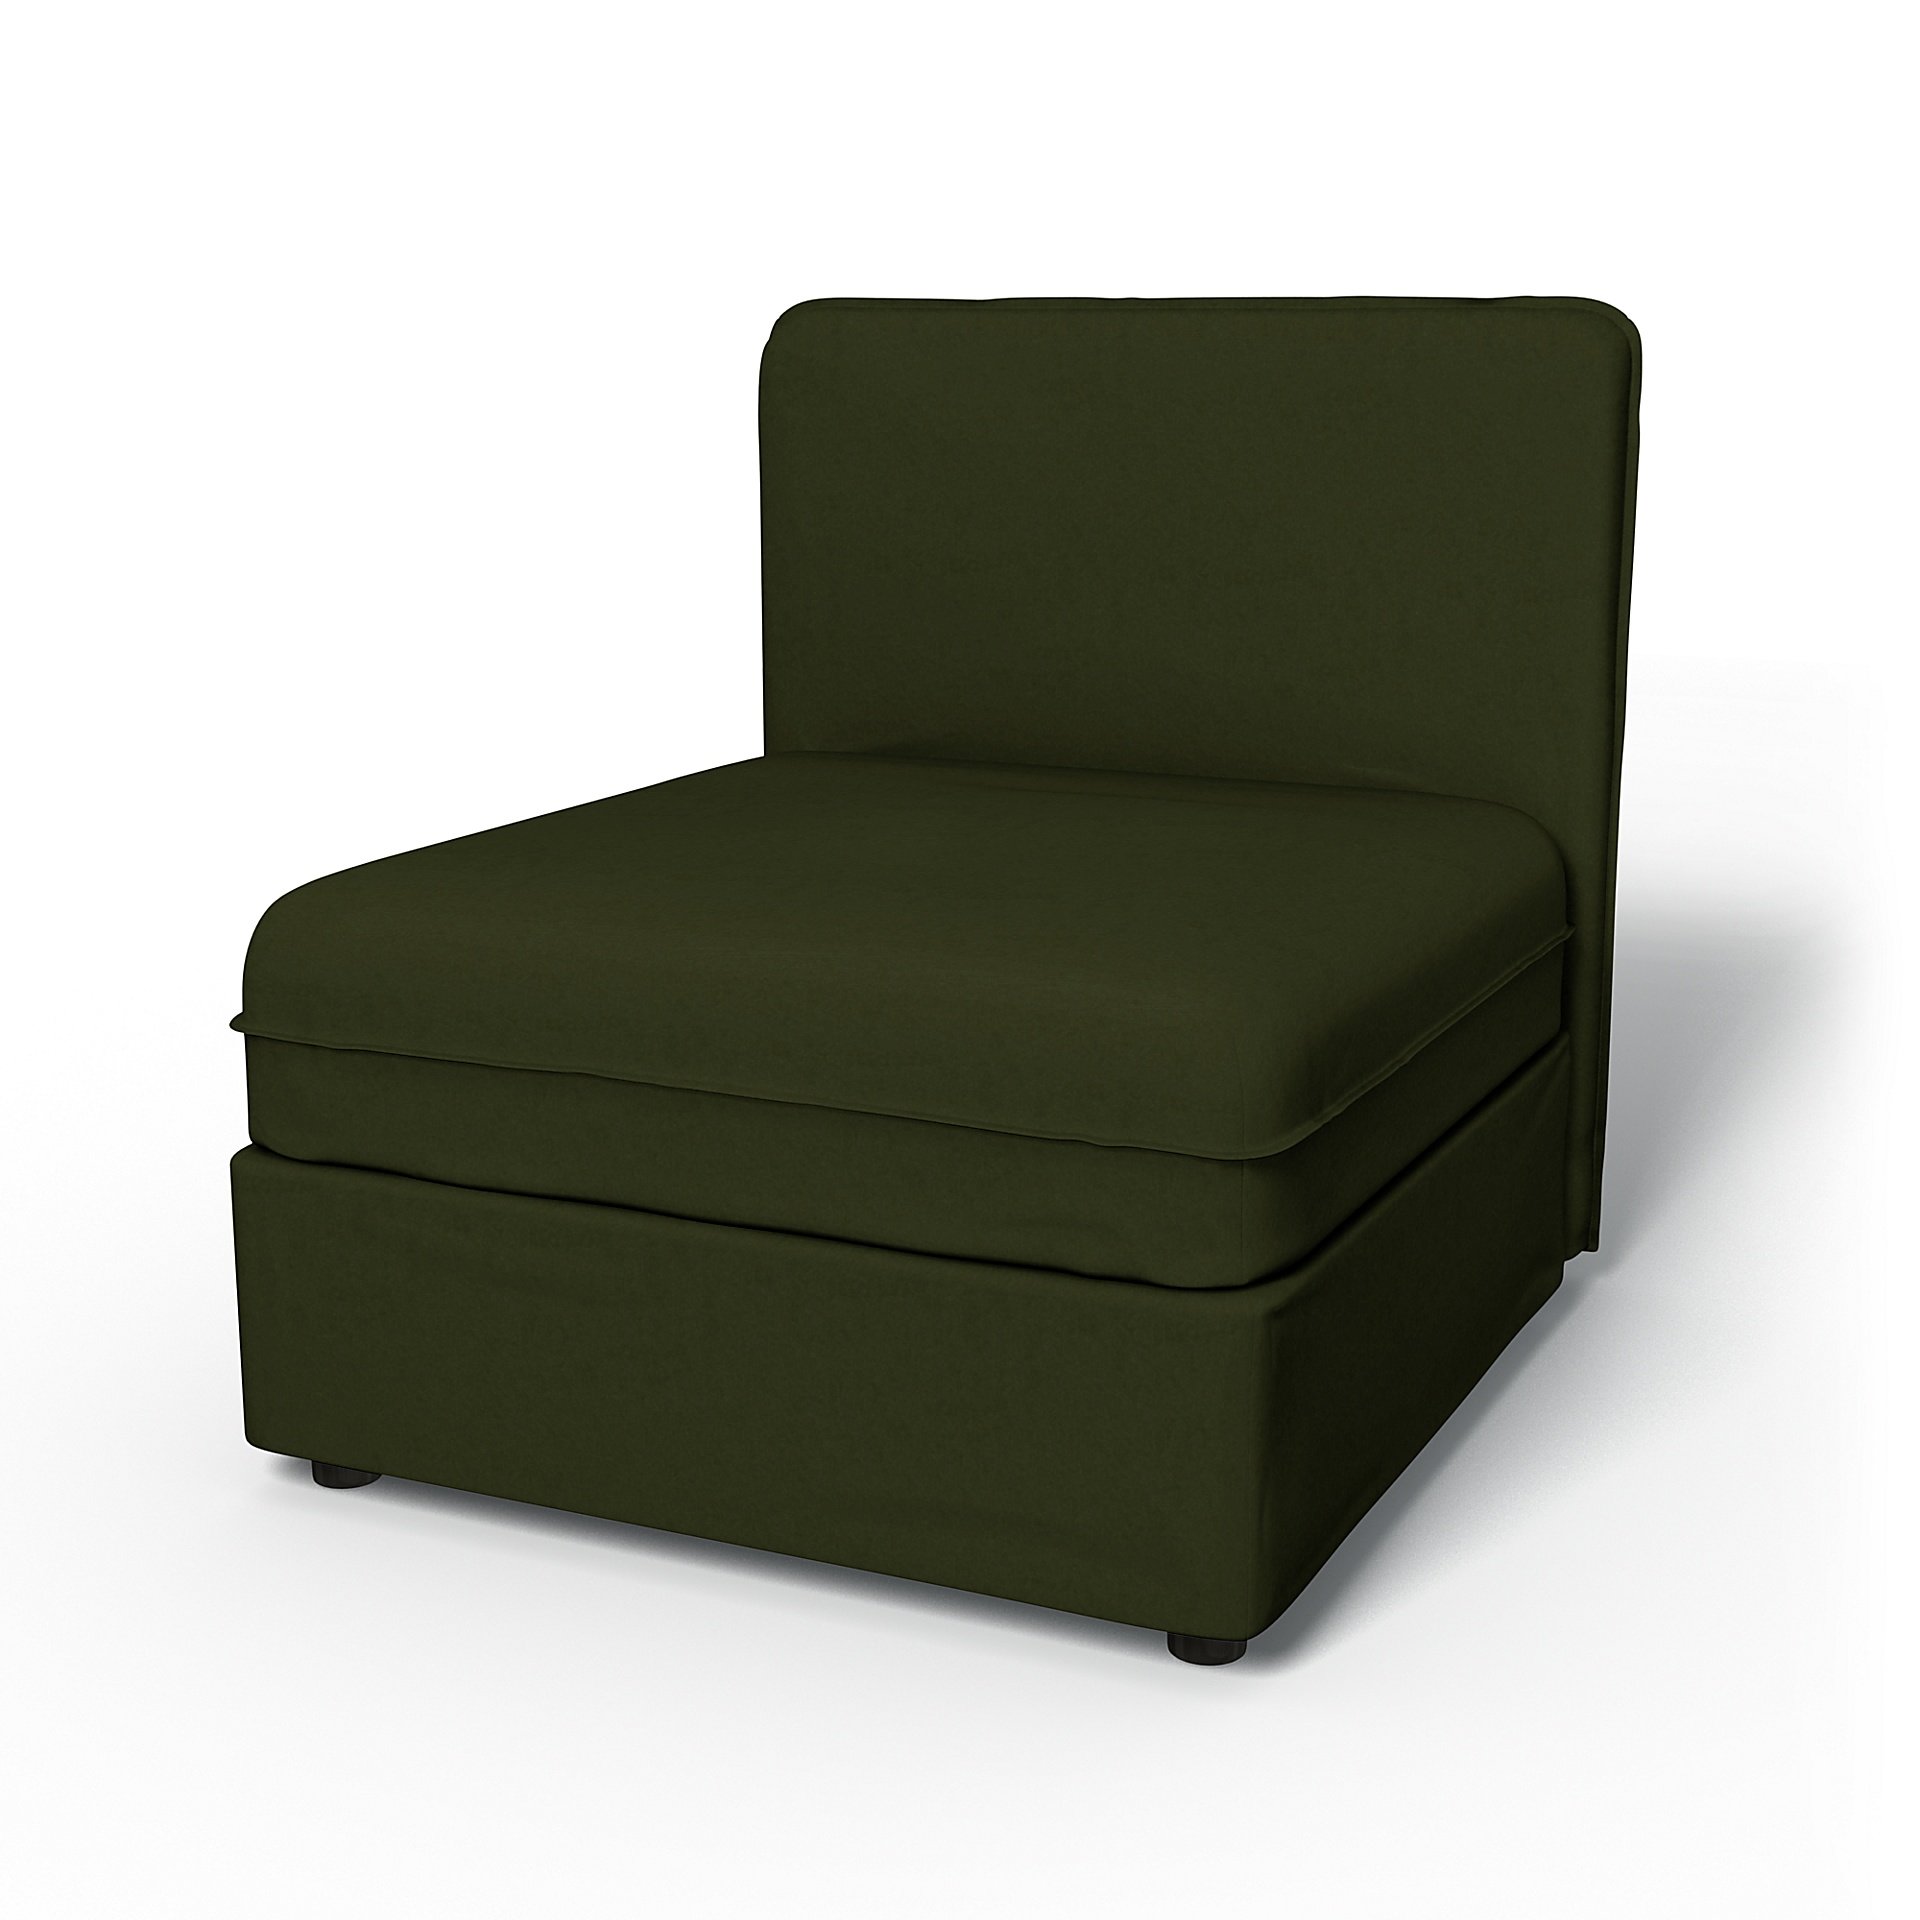 IKEA - Vallentuna Seat Module with Low Back Cover 80x80cm 32x32in, Moss, Velvet - Bemz